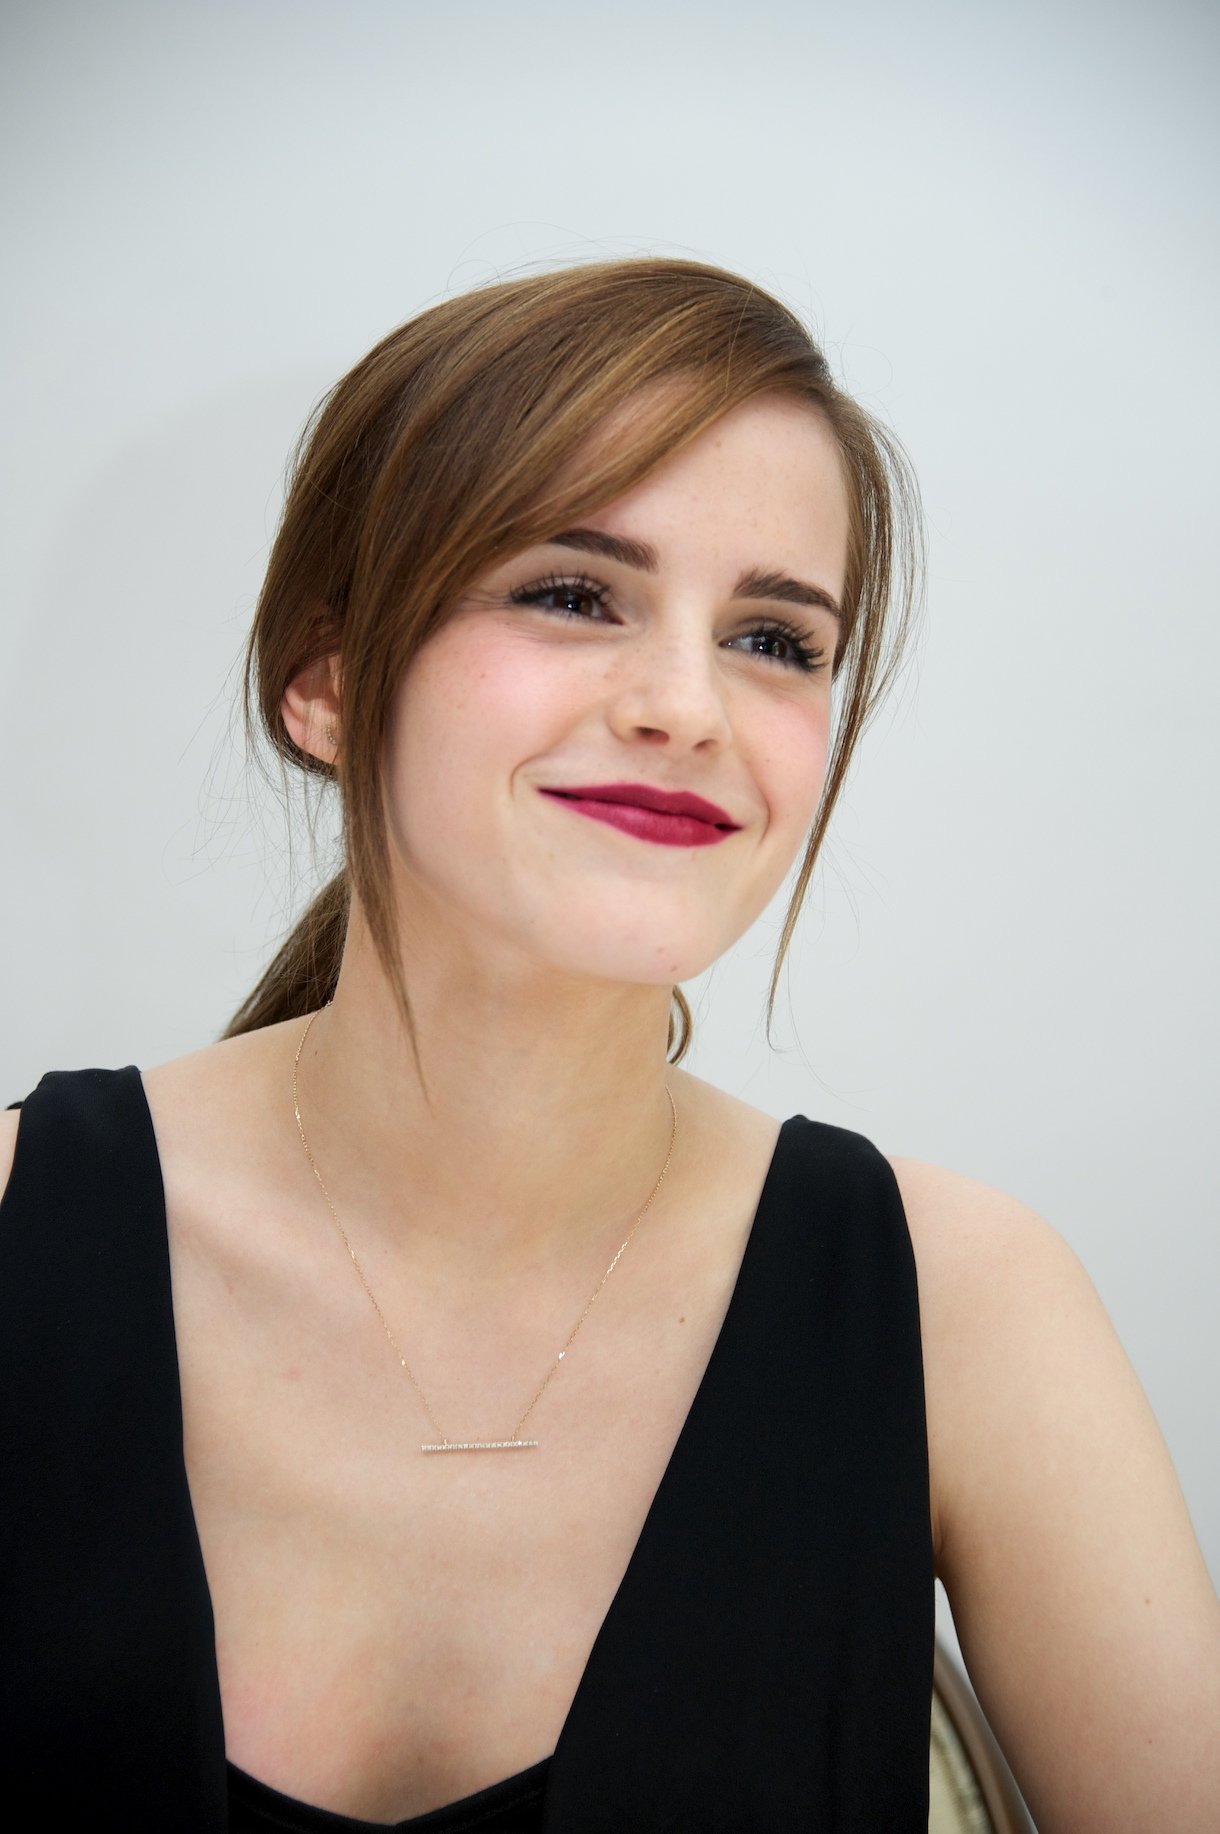 Emma Watson in 2014